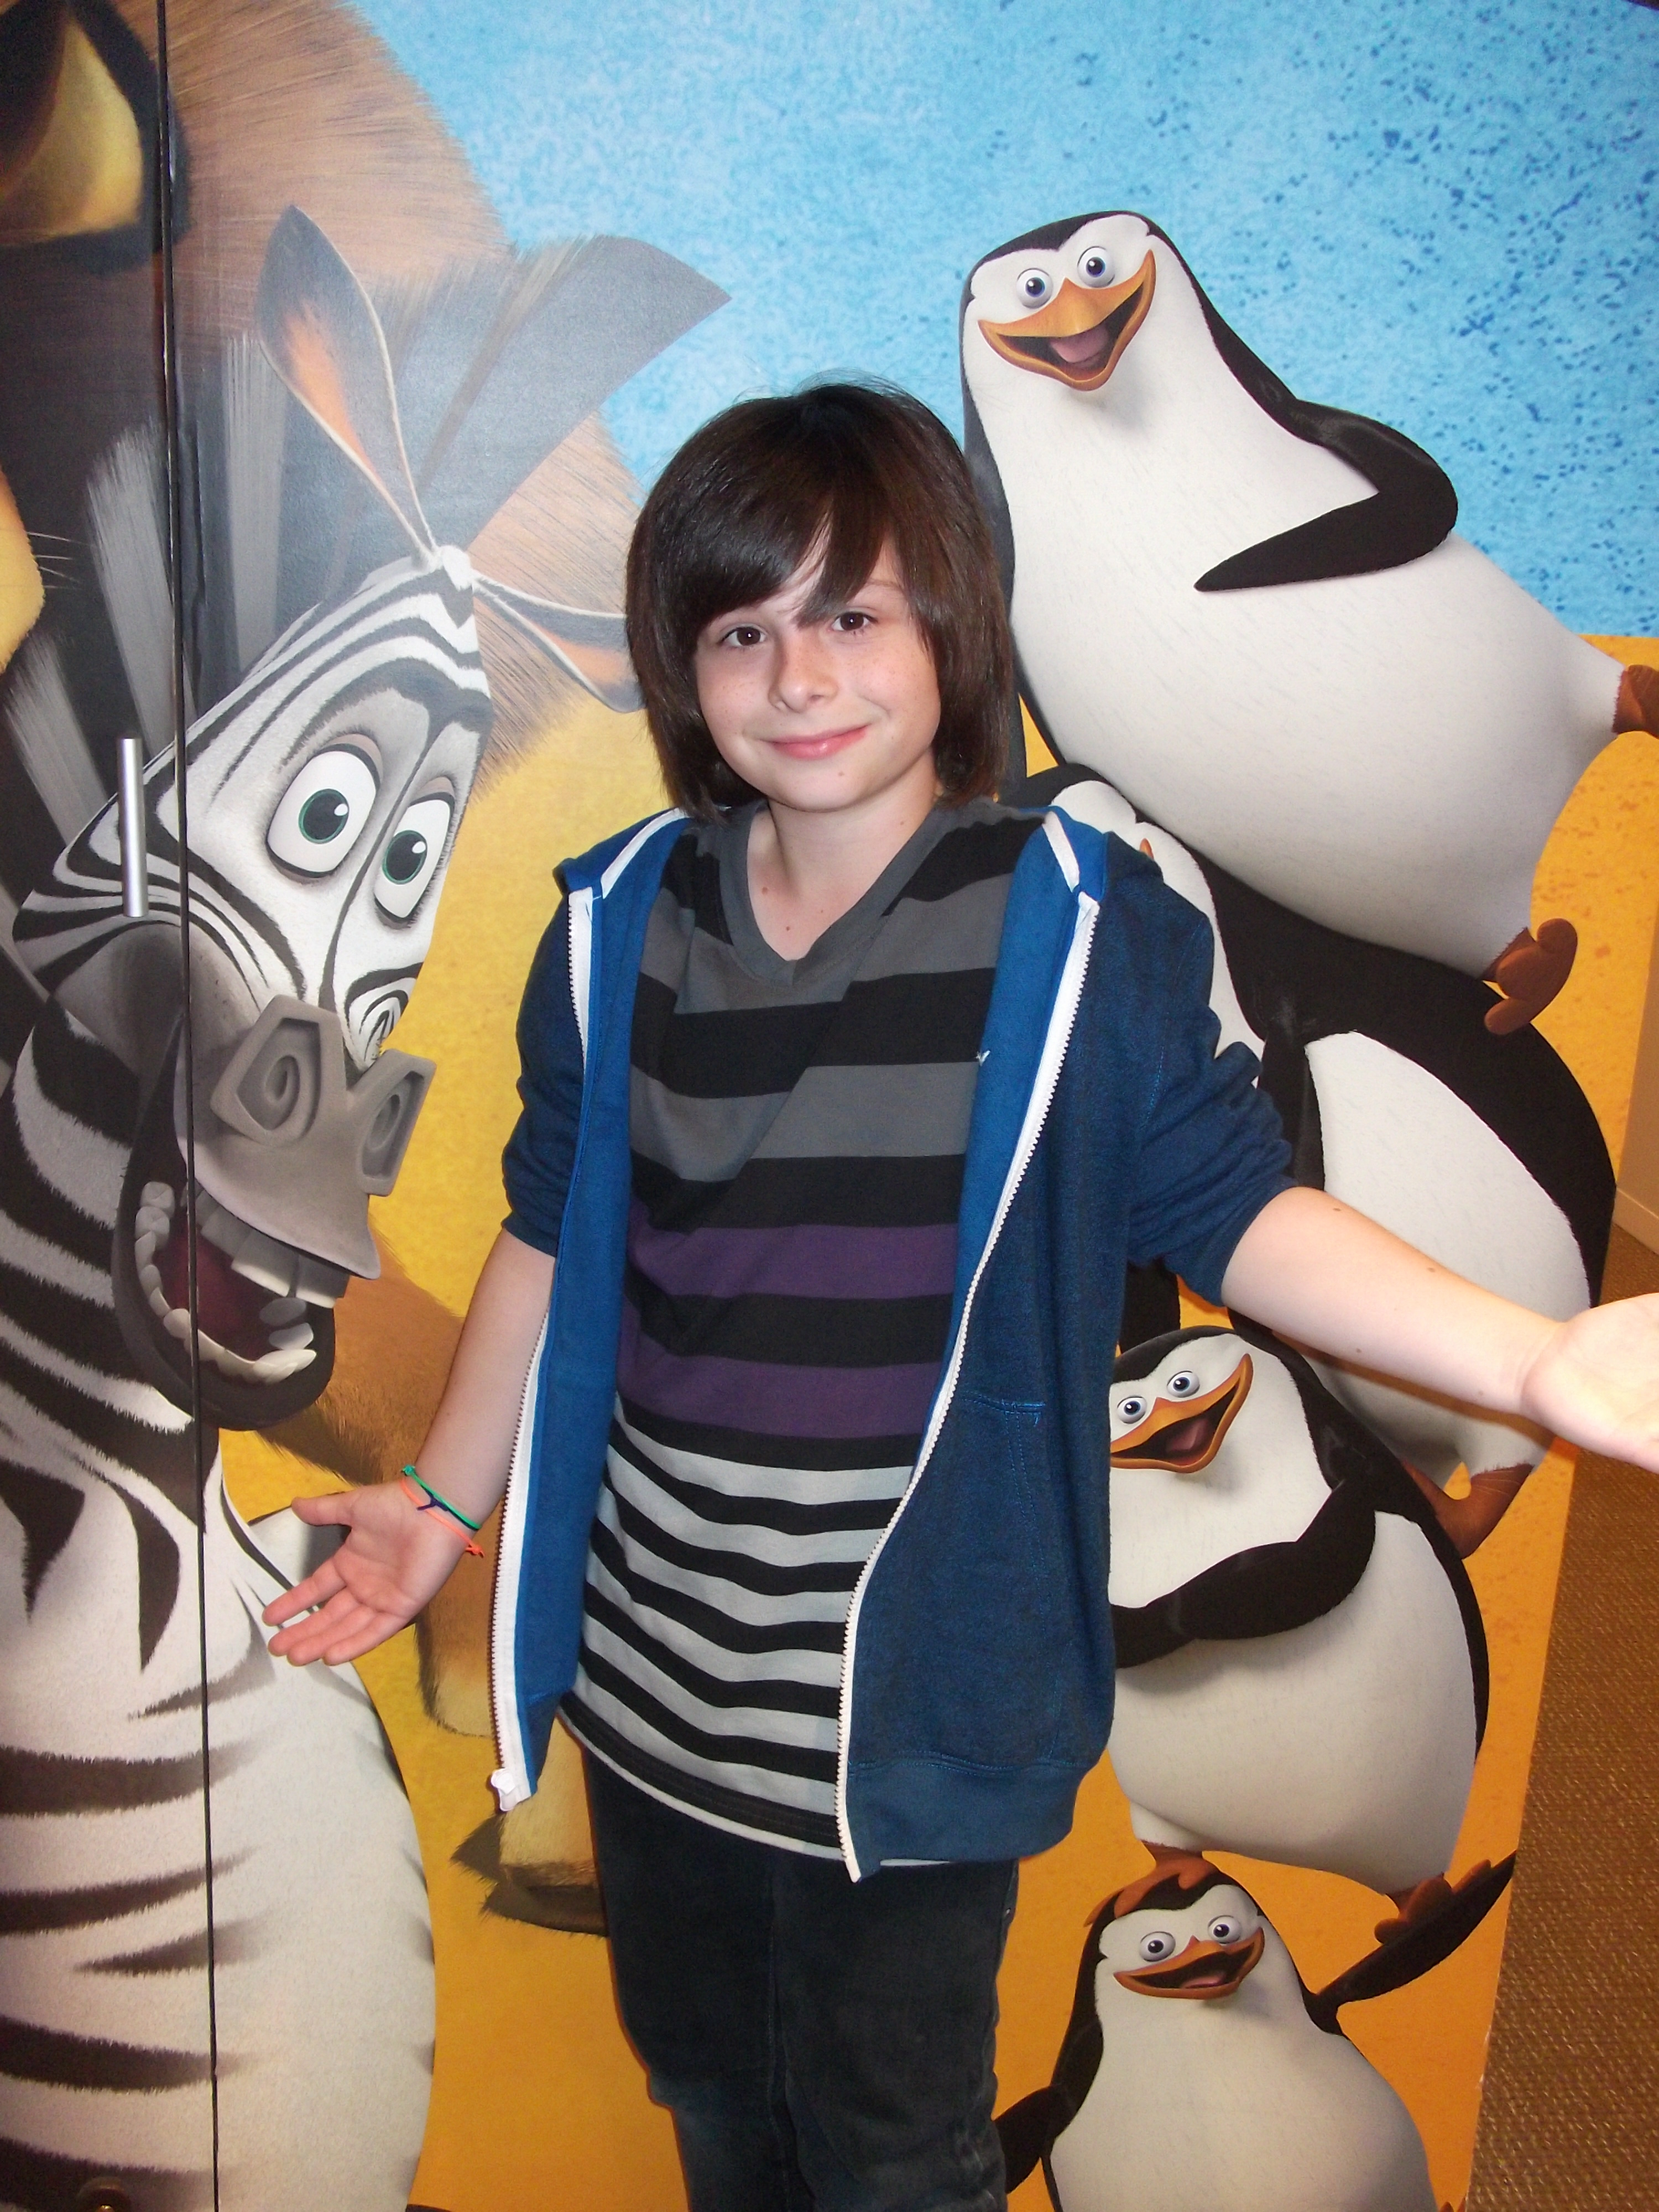 Robbie Tucker Madagascar3 ADR (Boy in Crowd) at DreamWorks Animation Studios 3/2012